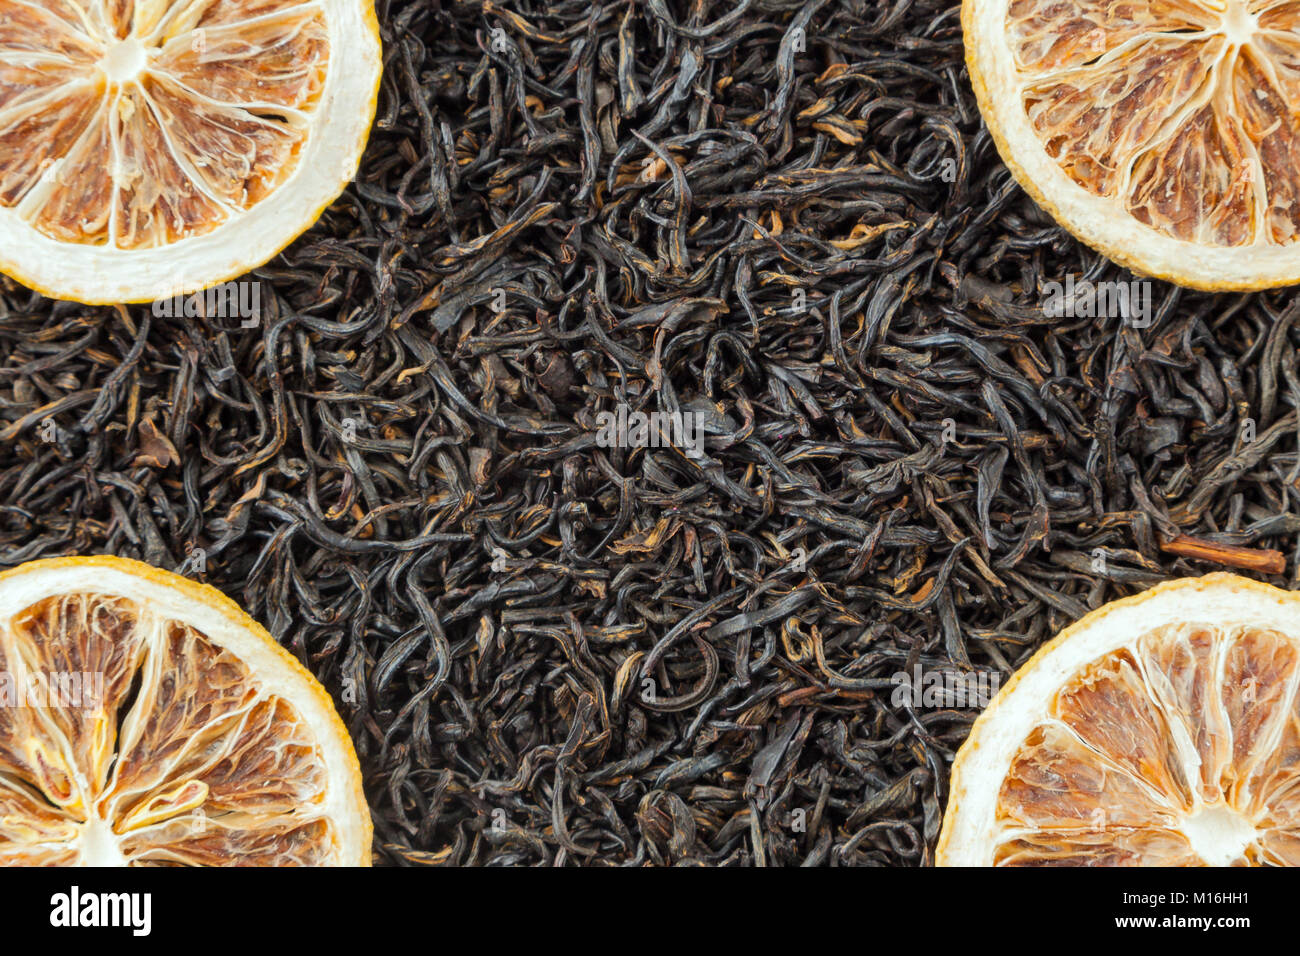 Tea herbs texture. Black tea. Organic dried black tea leaves. Stock Photo